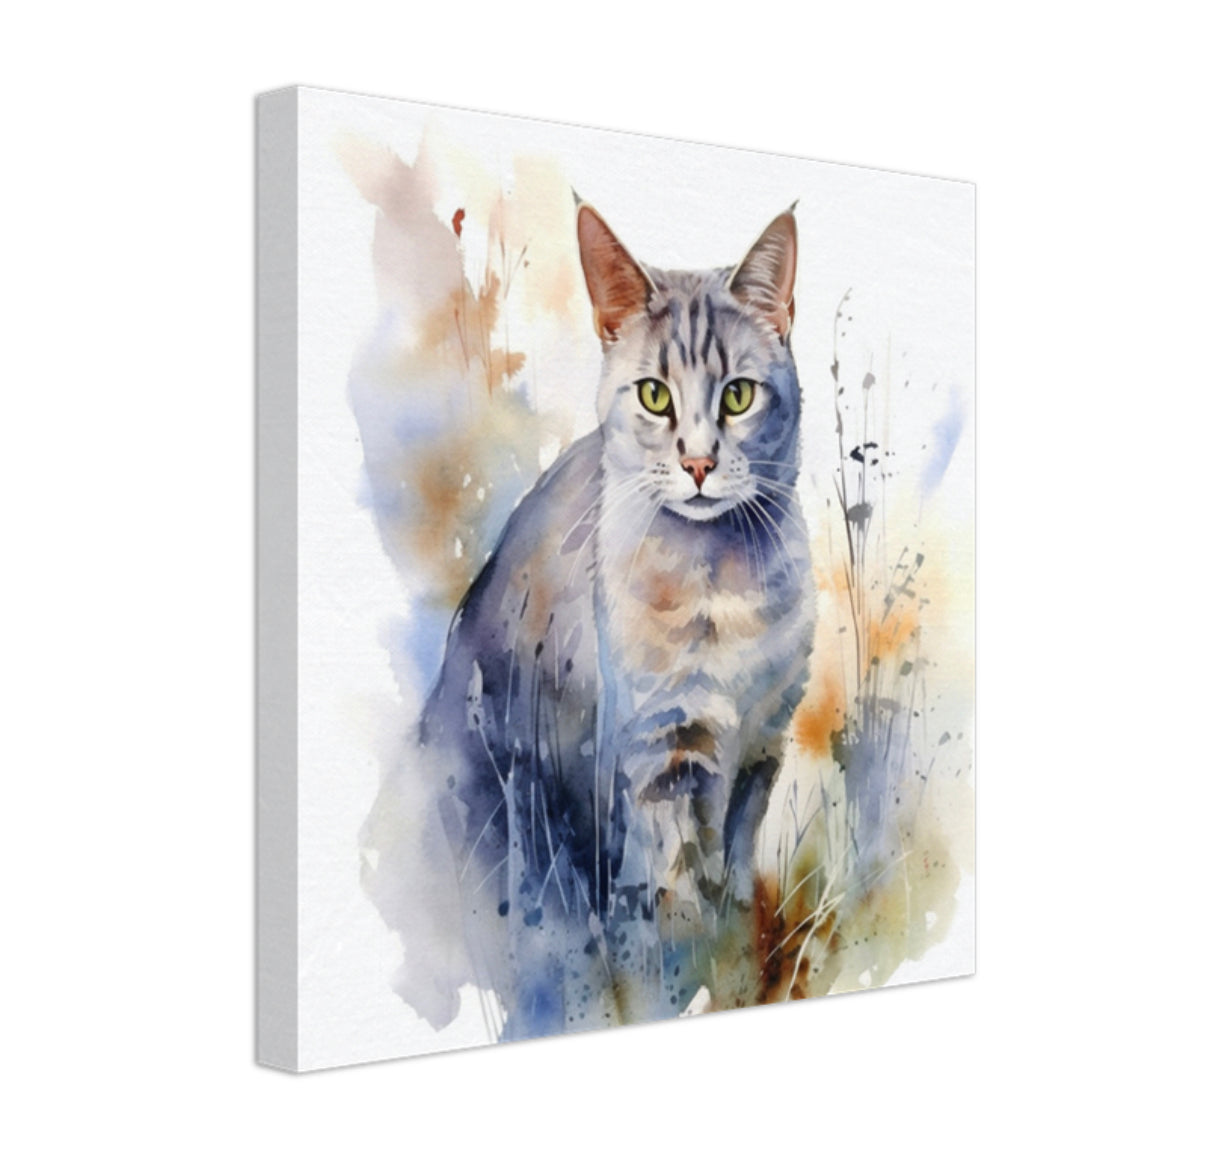 Australian mist cat canvas art